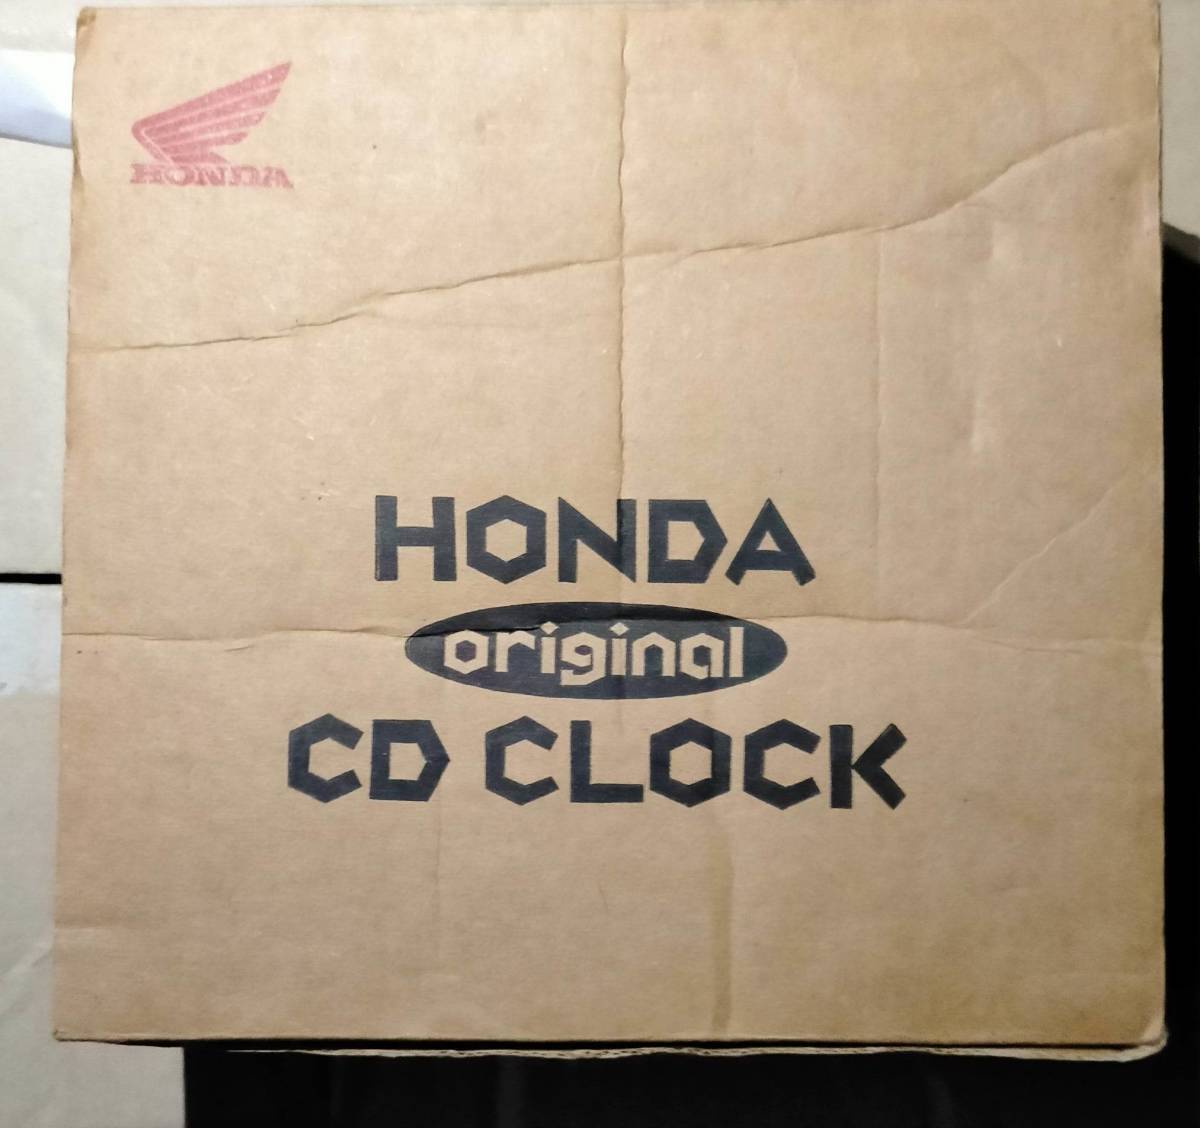 Rare Honda Original CD Clock Campaign Item Unused Box w/ Minor Imperfections